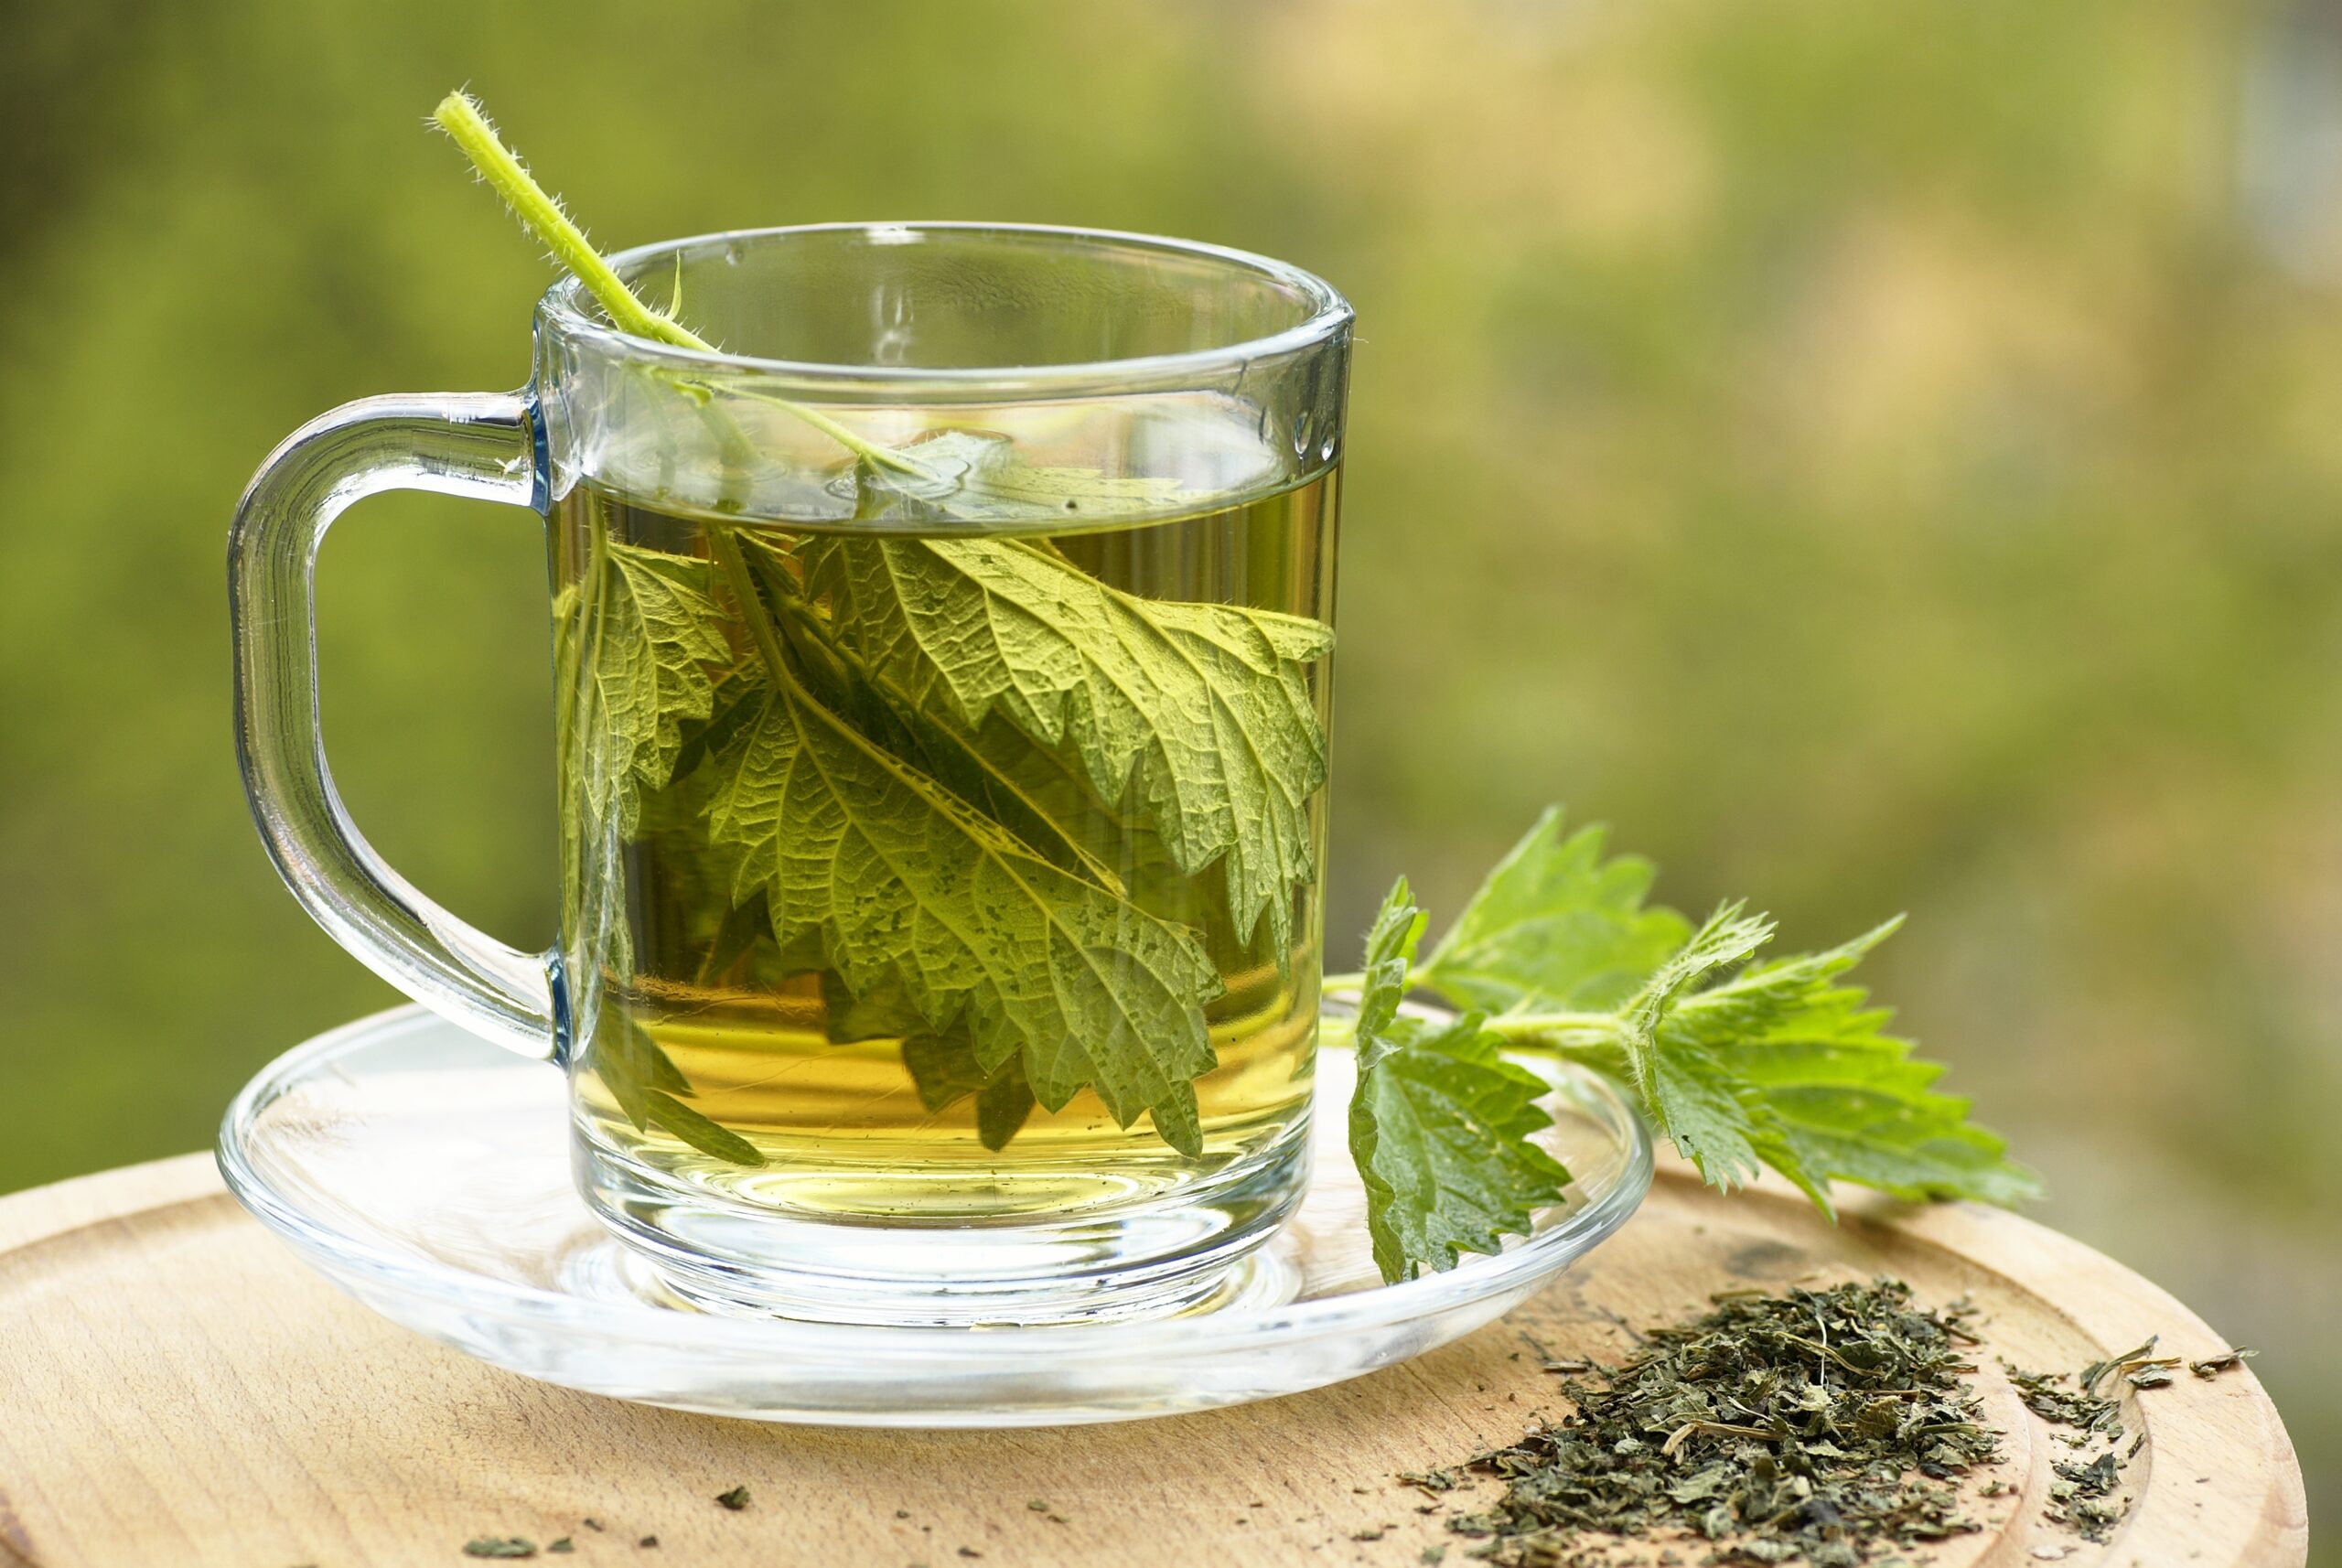 Les avantages du thé en vrac par rapport au thé en infusette